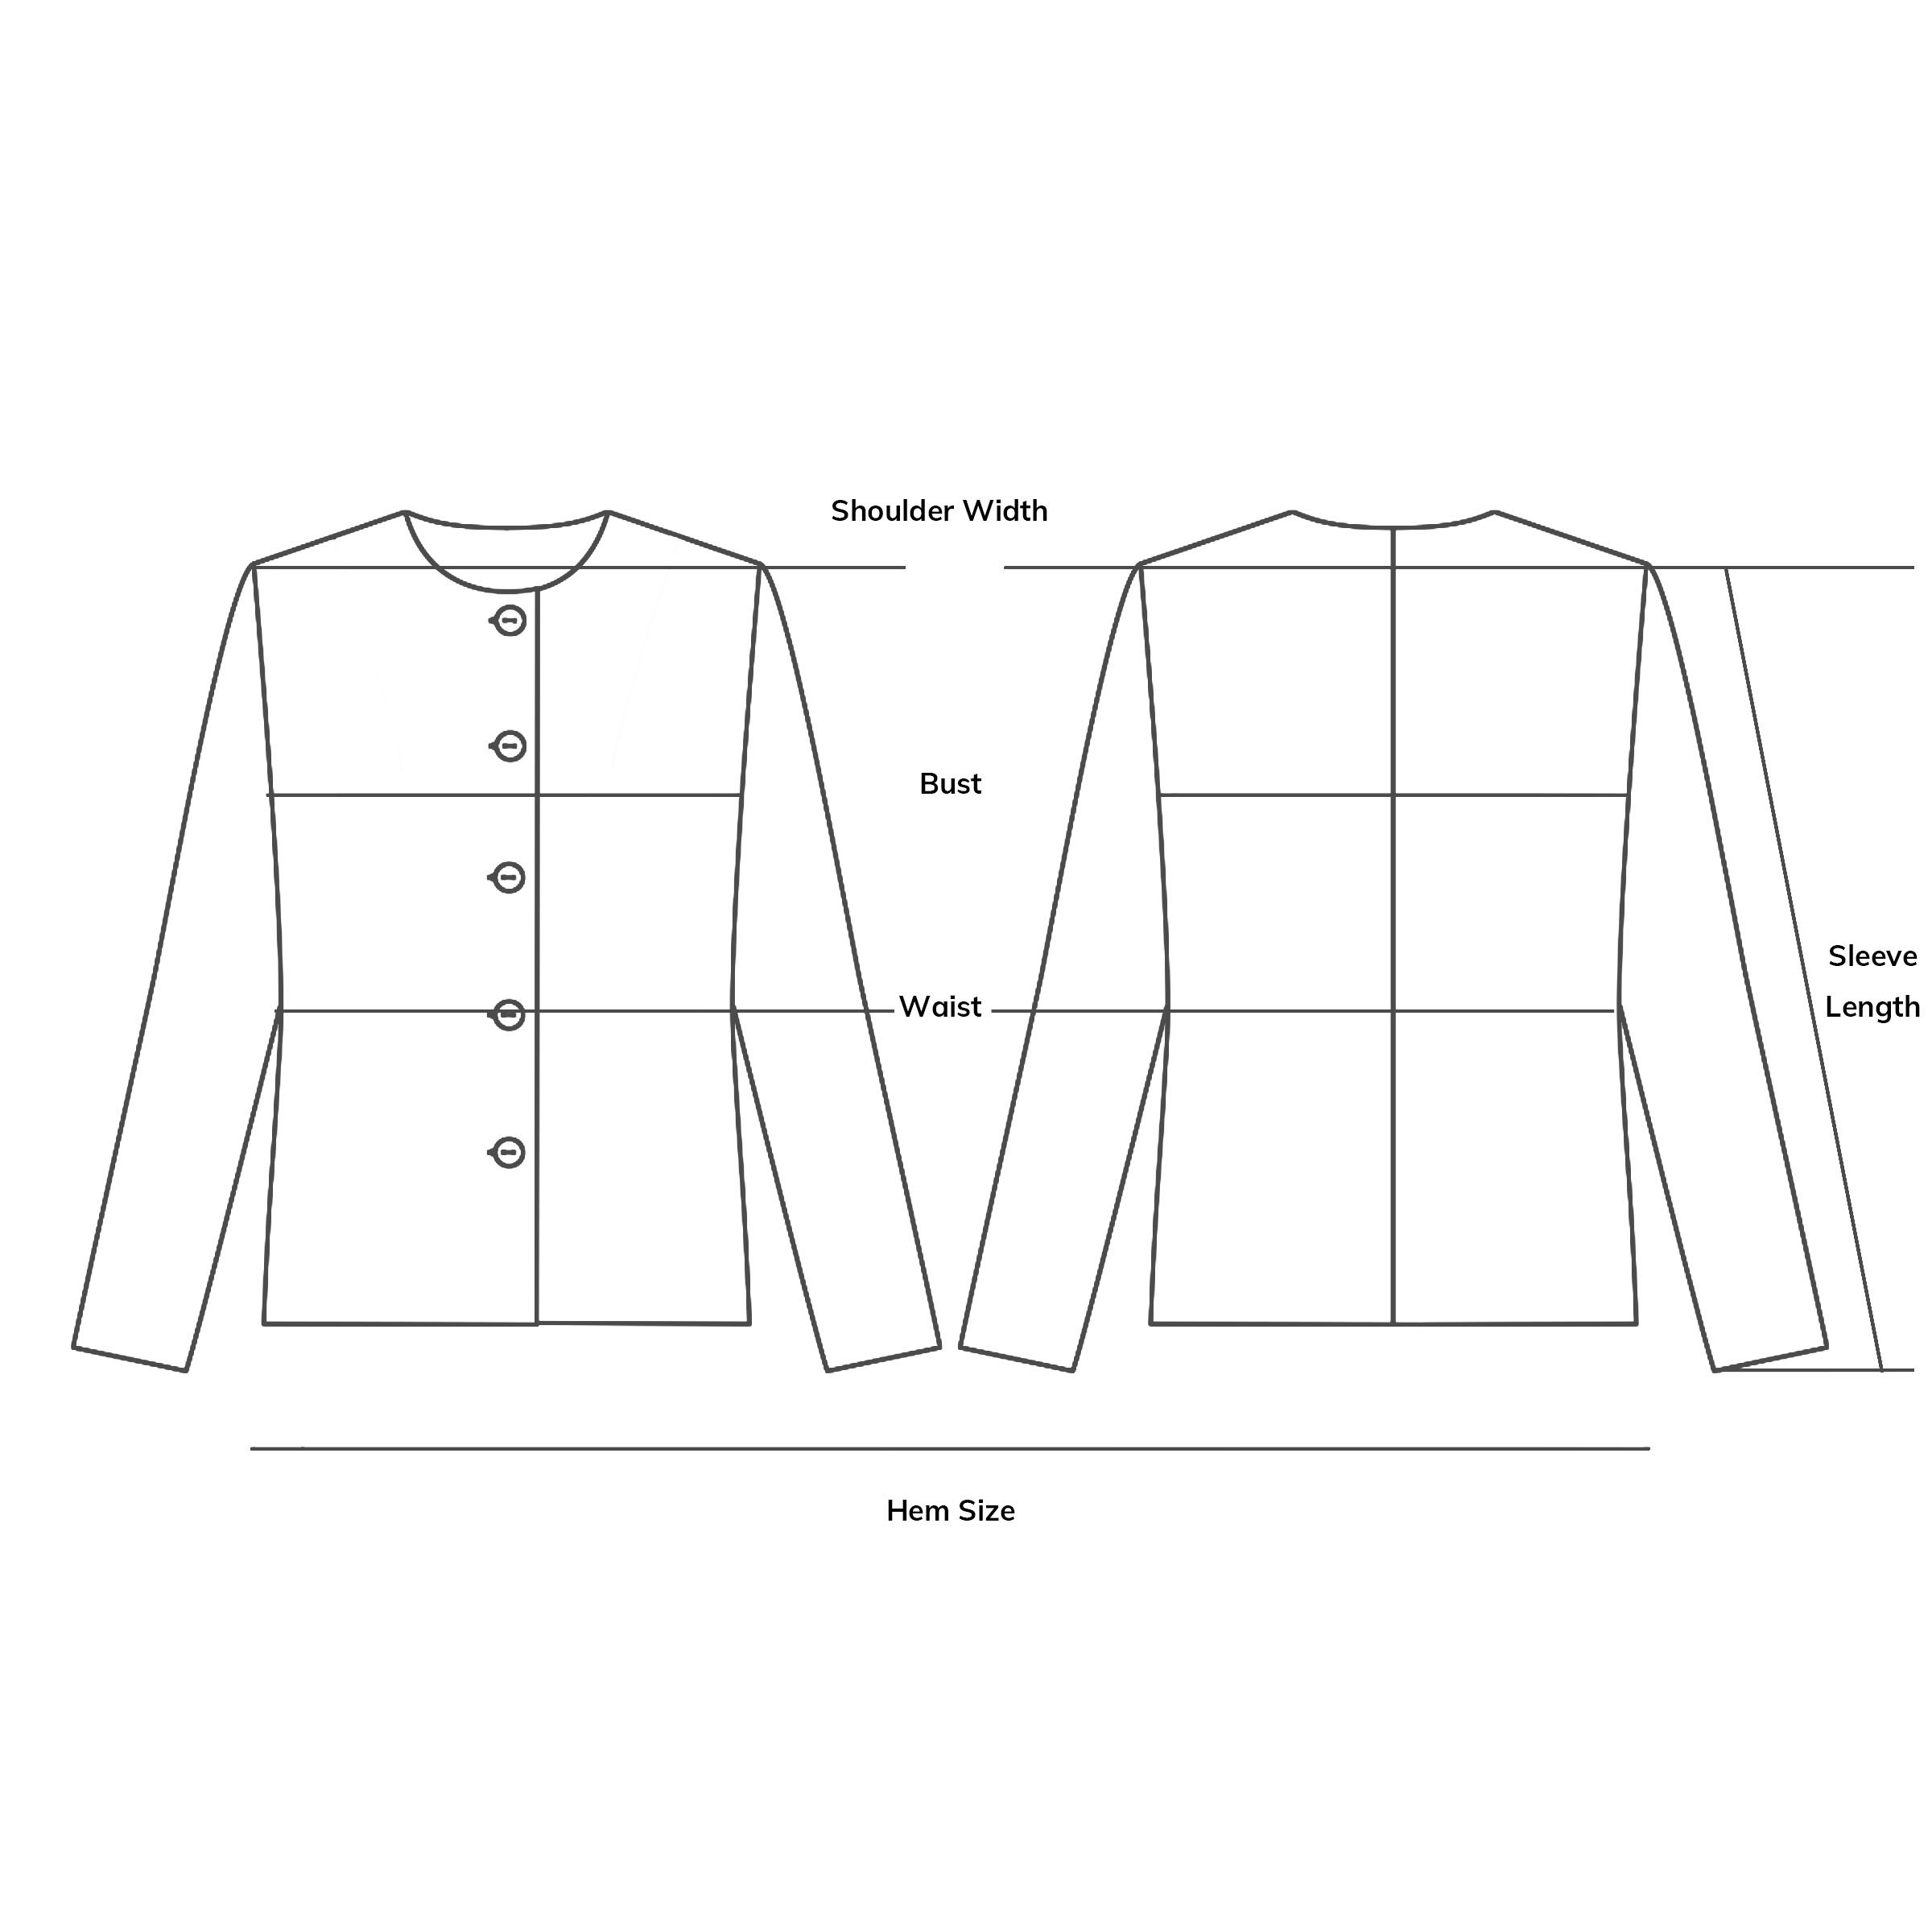 Half-Zip Fleece Sweatshirt